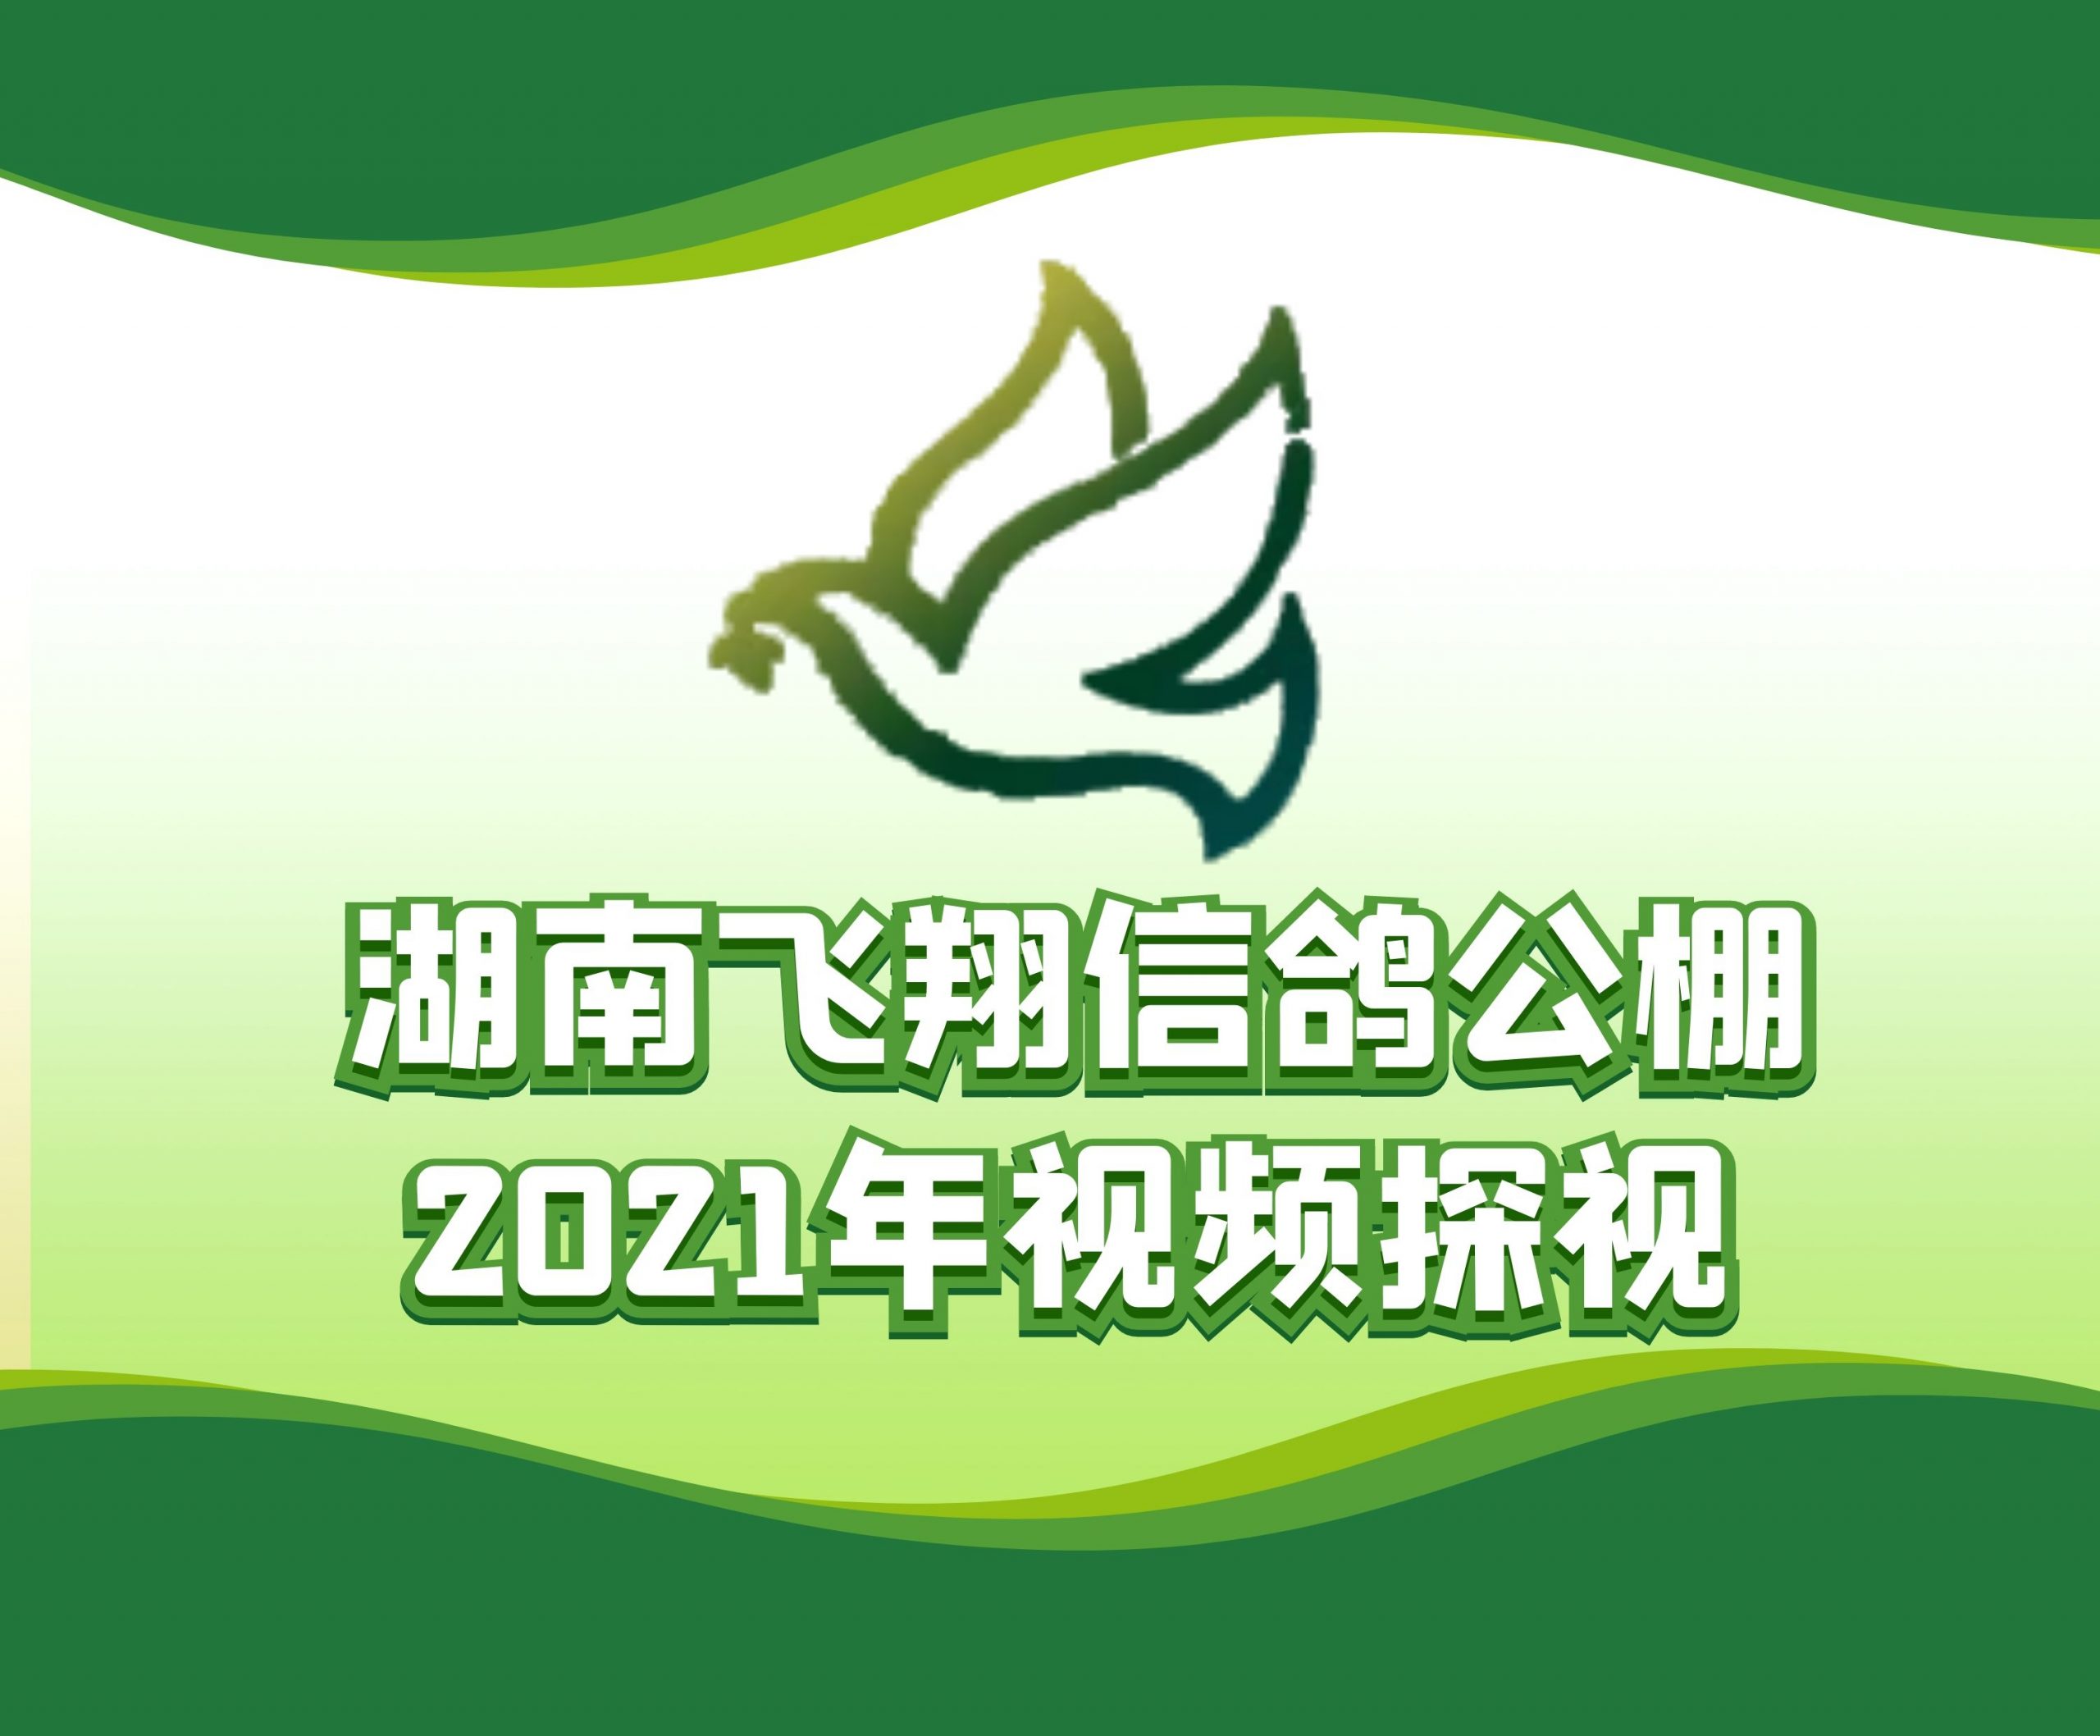 昌山信鸽-黄伟民-2021-14-0127021